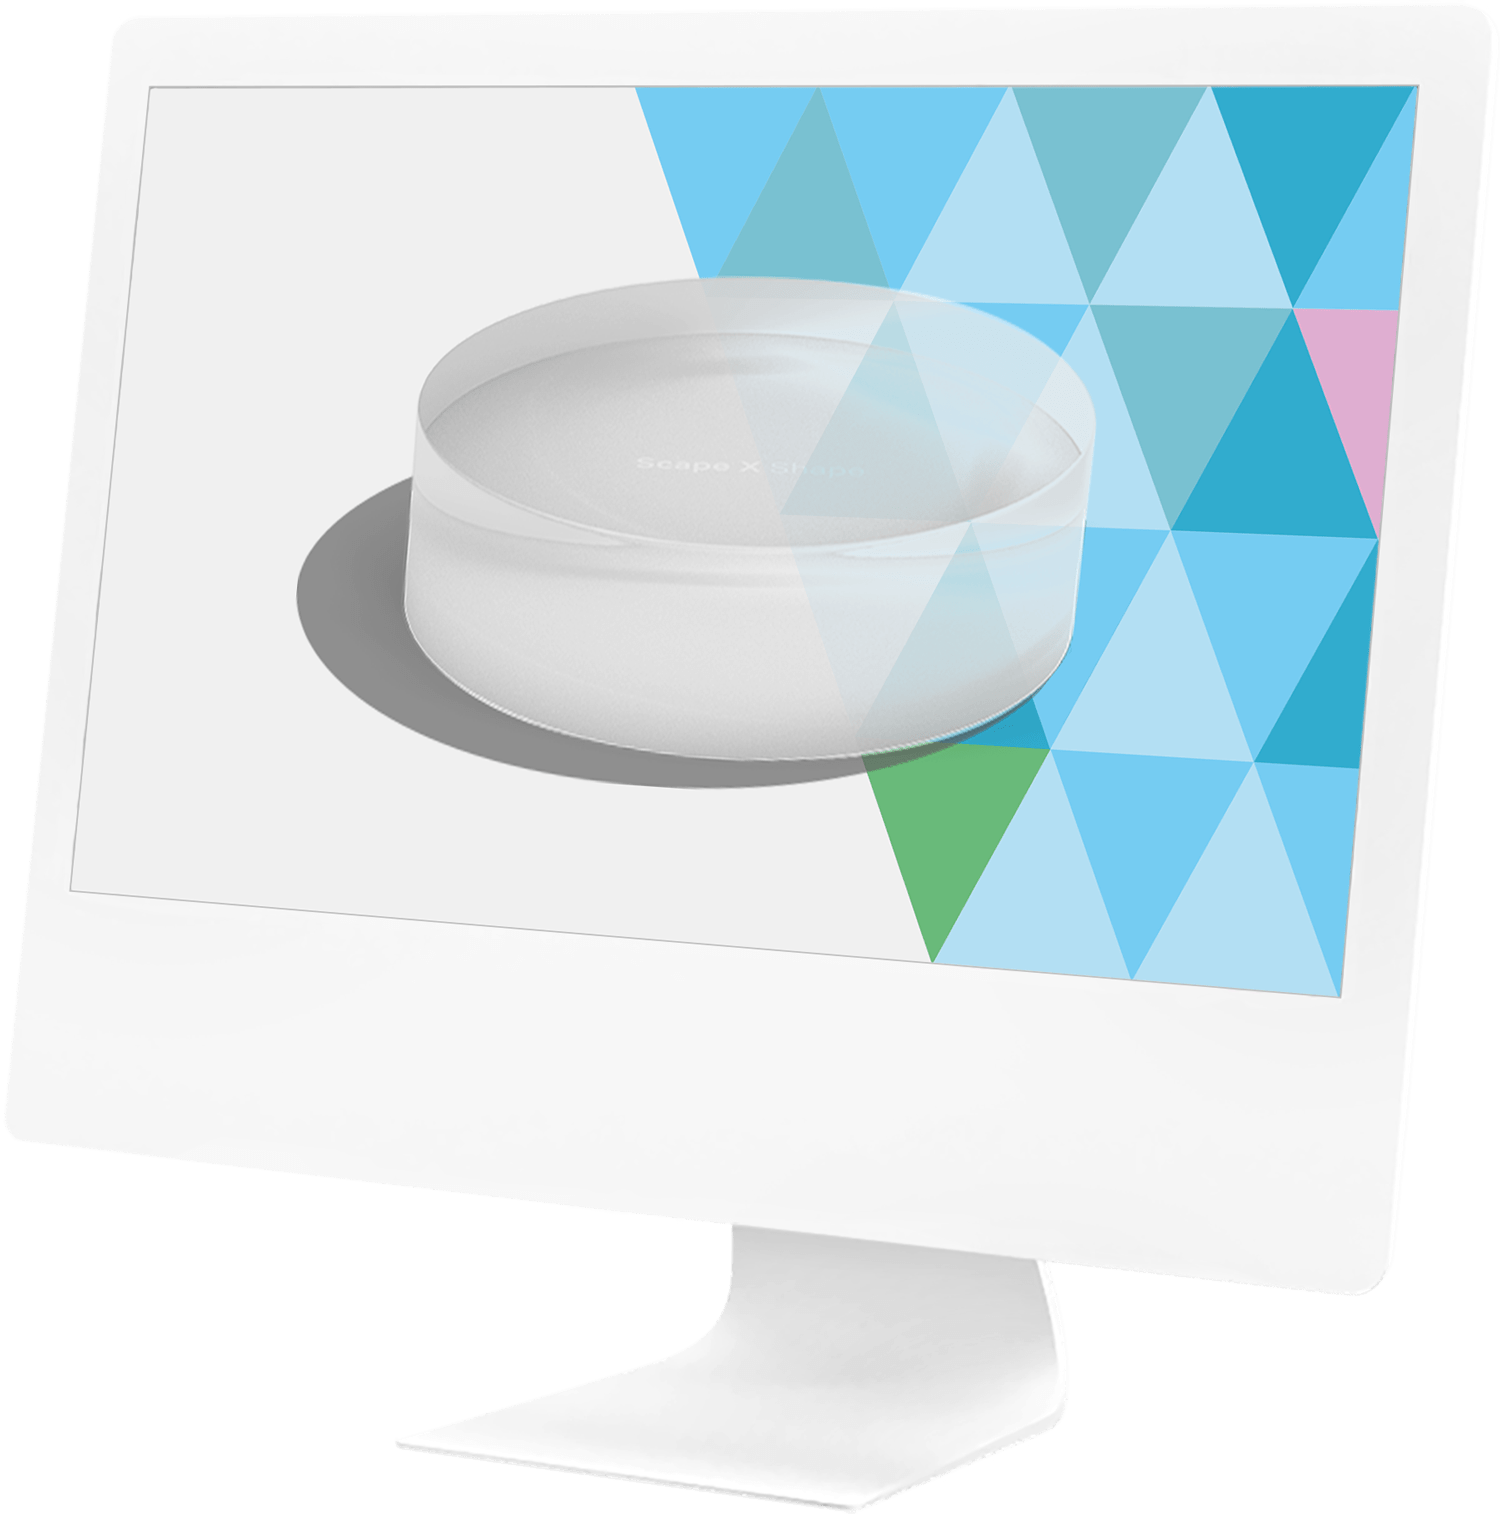 iMc-Mockup mit transparentem Token und bunten Dreiecken